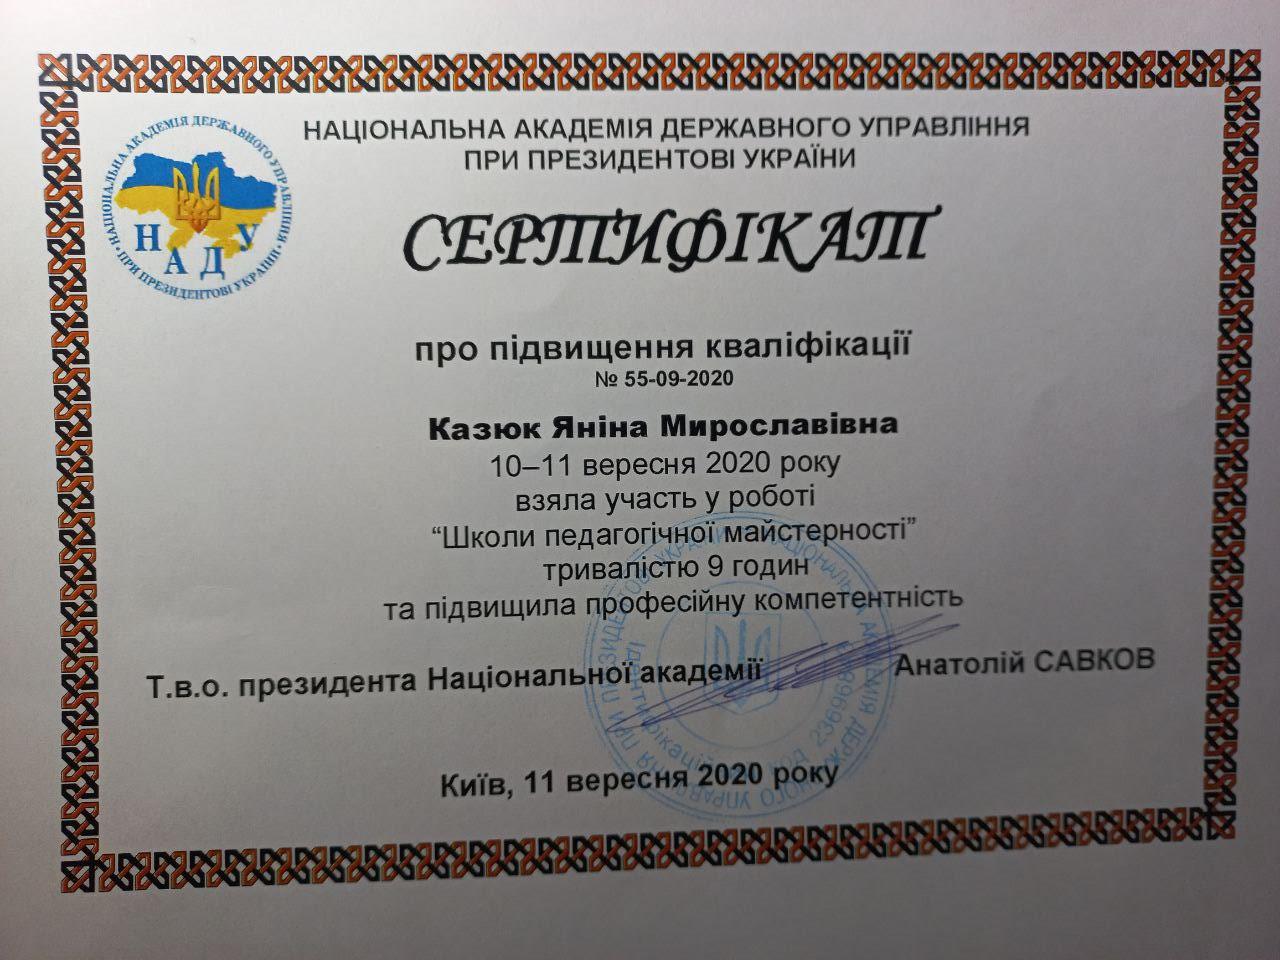  Сертифікат про підвищення кваліфікації. Участь в «Школі педагогічної майстерності» НАДУ при Президентові України